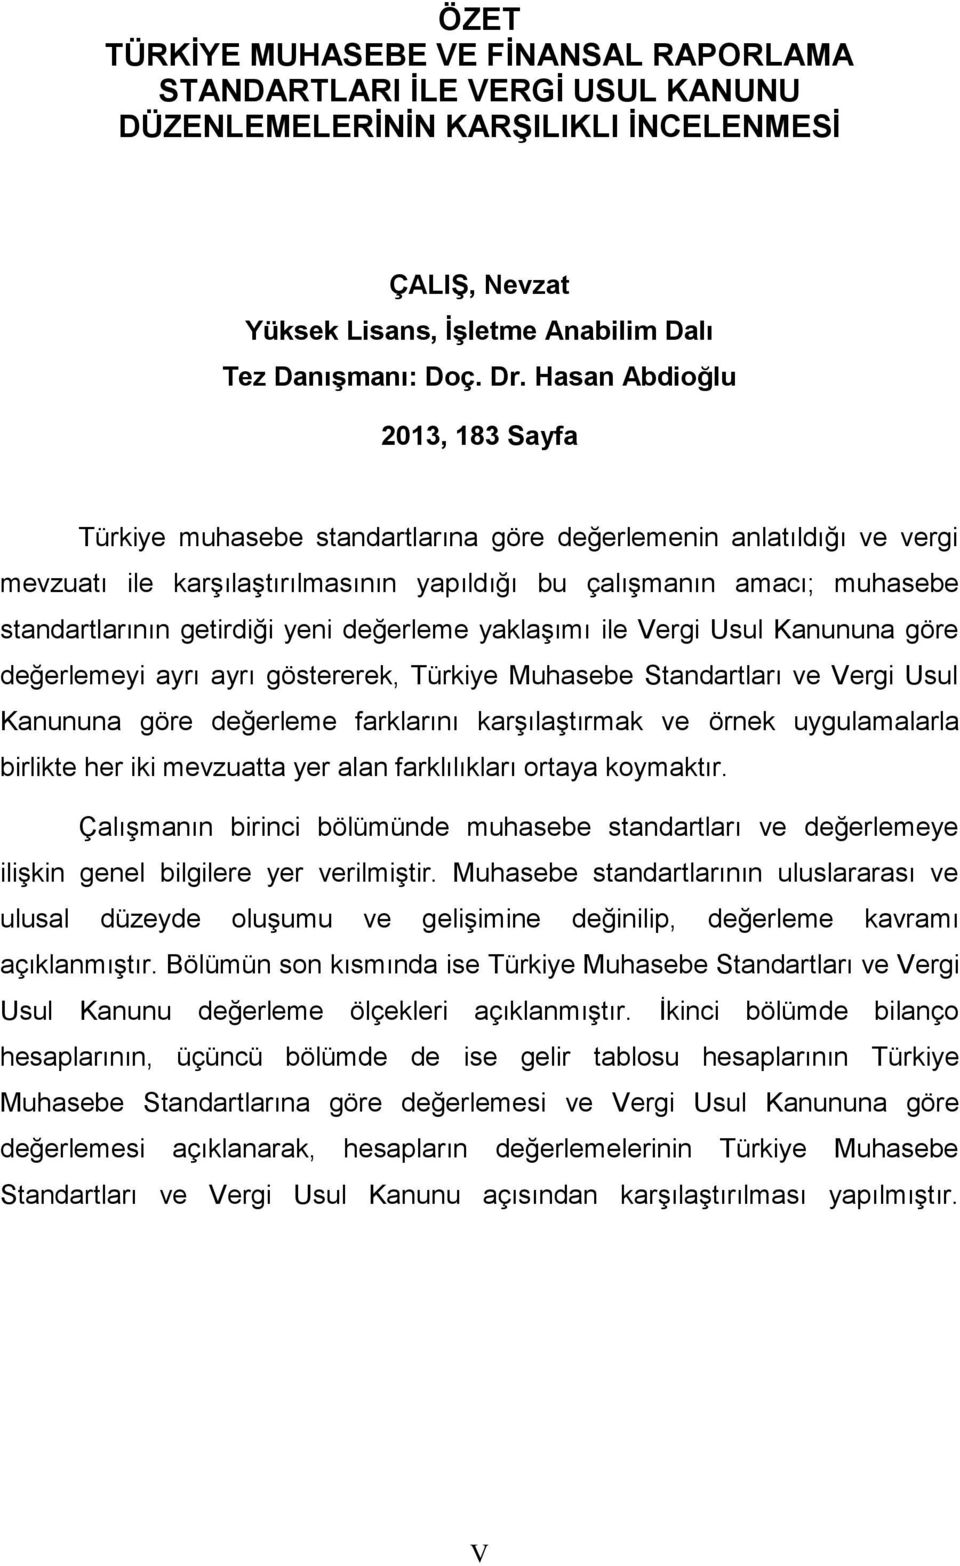 getirdiği yeni değerleme yaklaşımı ile Vergi Usul Kanununa göre değerlemeyi ayrı ayrı göstererek, Türkiye Muhasebe Standartları ve Vergi Usul Kanununa göre değerleme farklarını karşılaştırmak ve